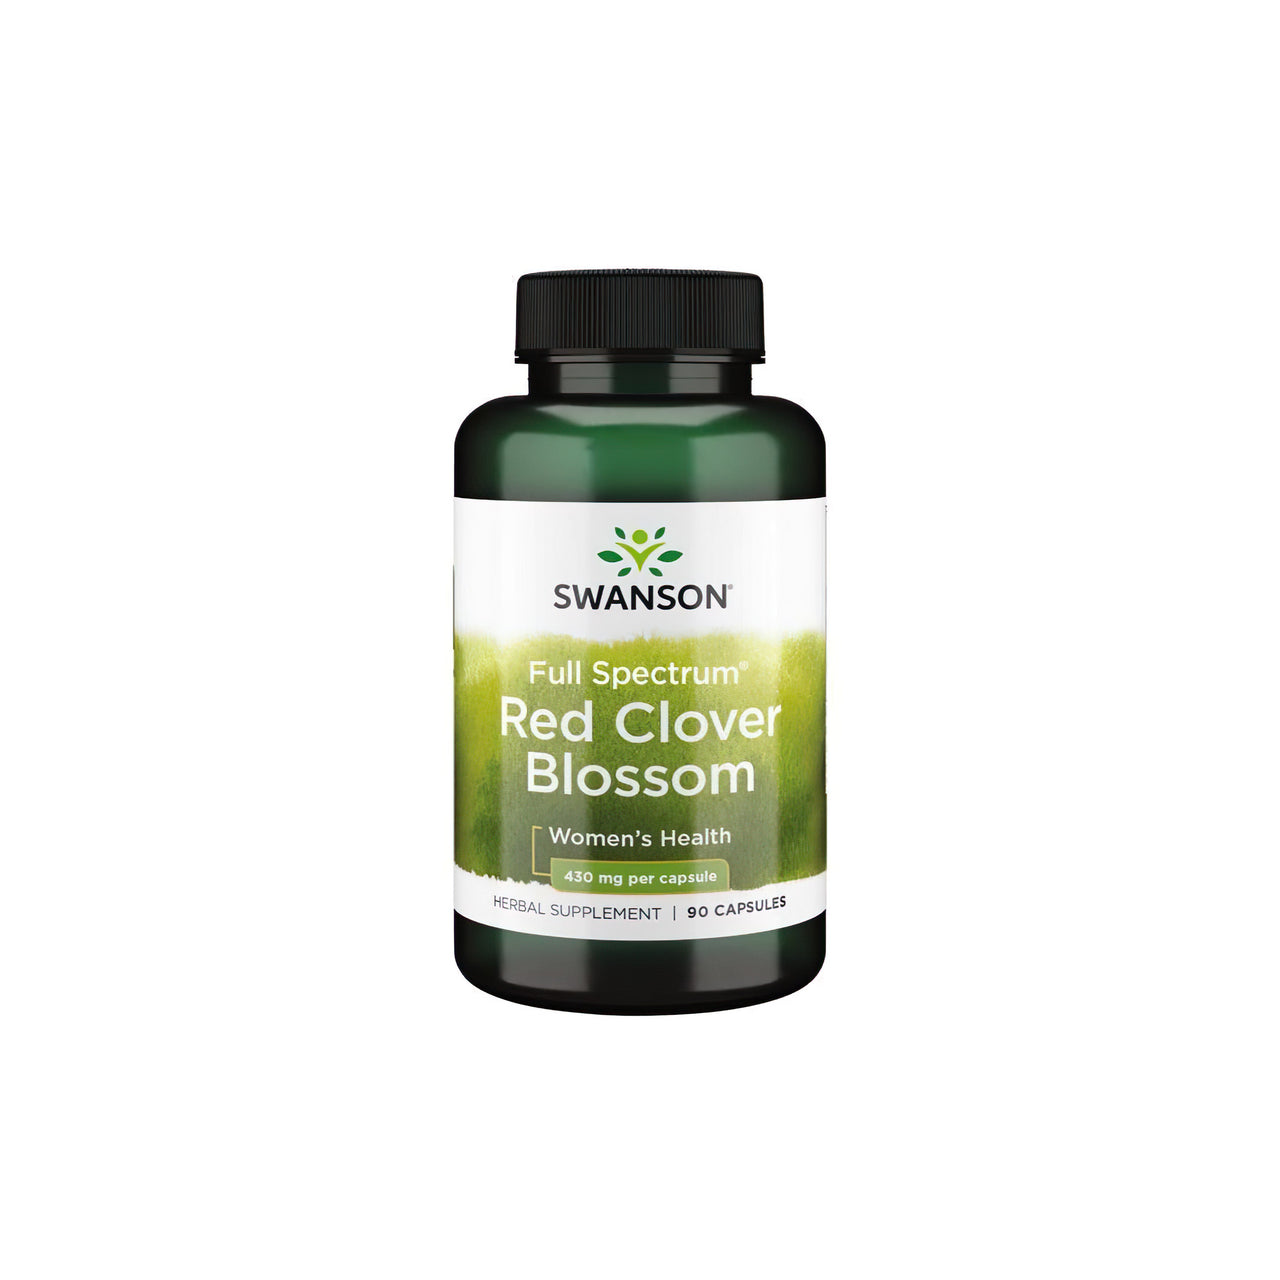 Swanson Red Clover Blossom 430 mg 90 gélules est un remède naturel qui peut apporter un soulagement pendant la ménopause ou le cycle menstruel.